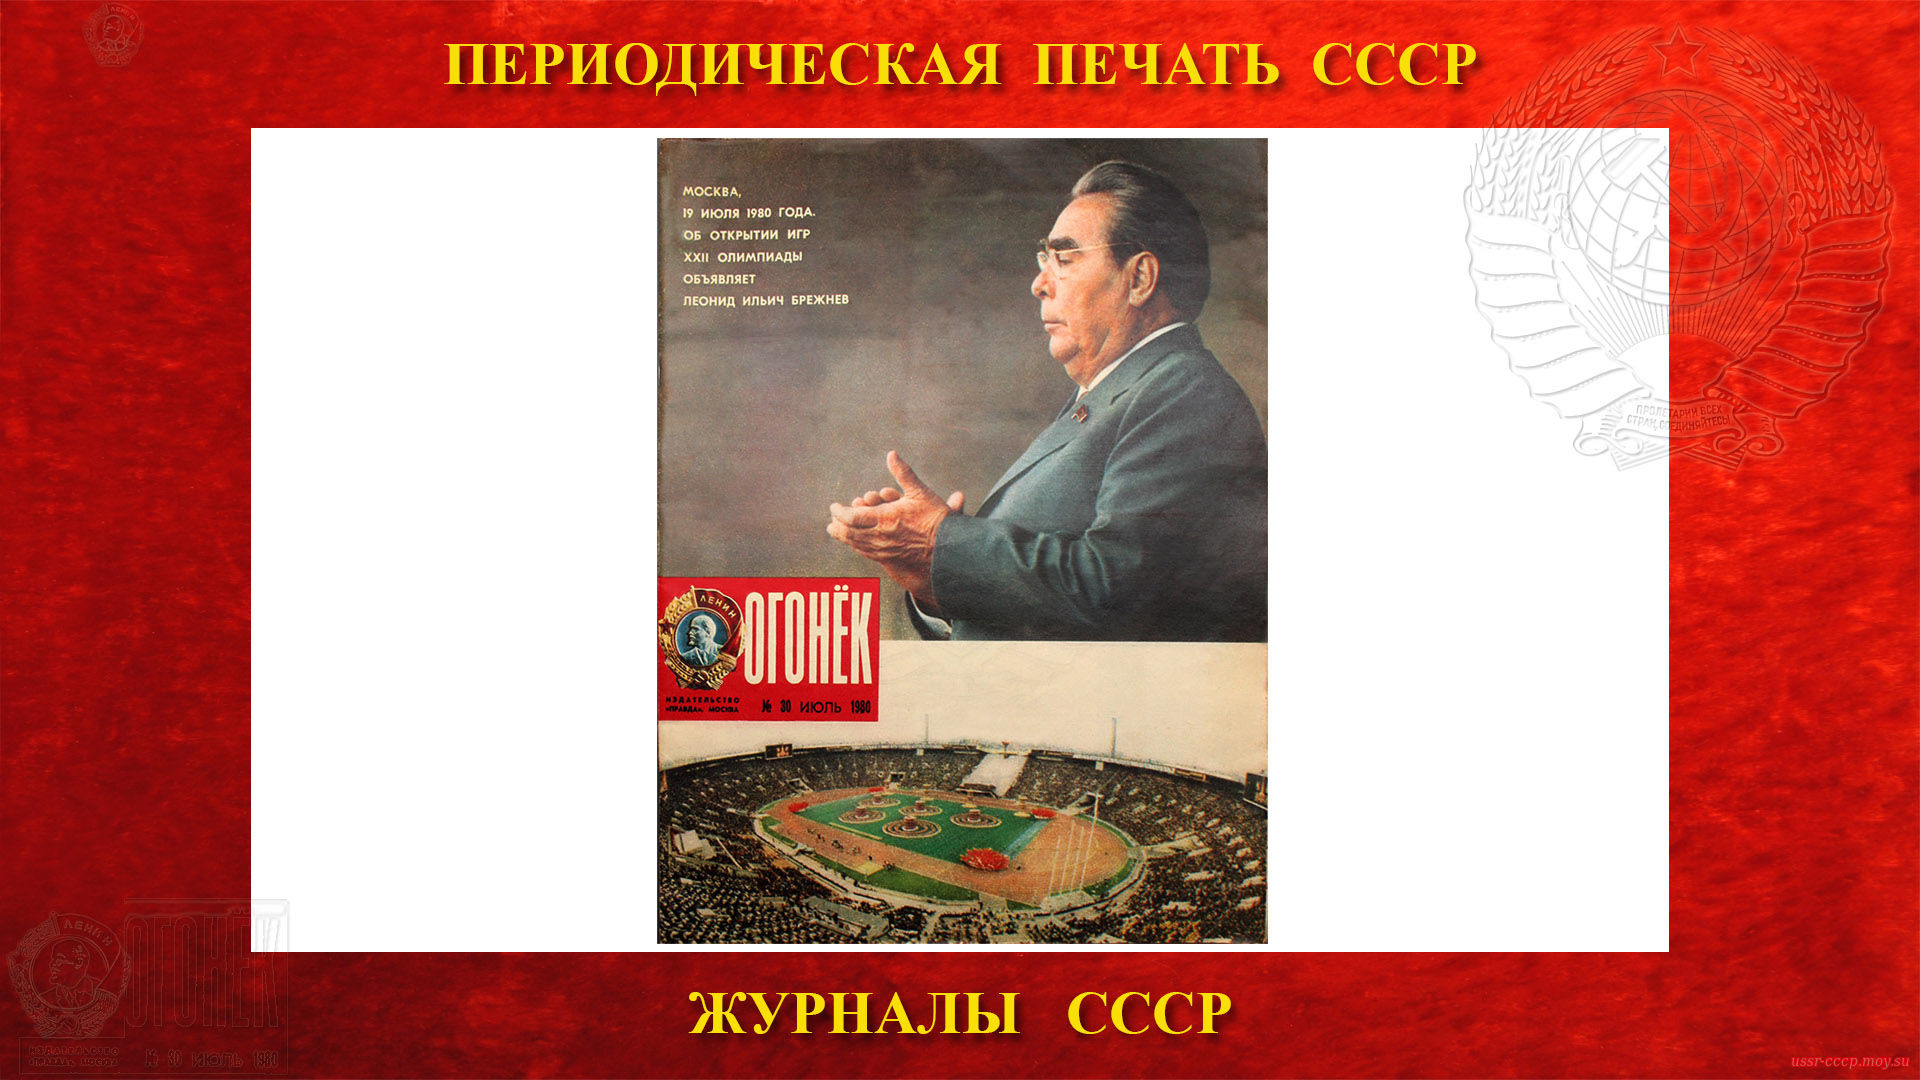 ОГОНЁК — Советский иллюстрированный общественно-политический и литературно-художественный еженедельный журнал в СССР